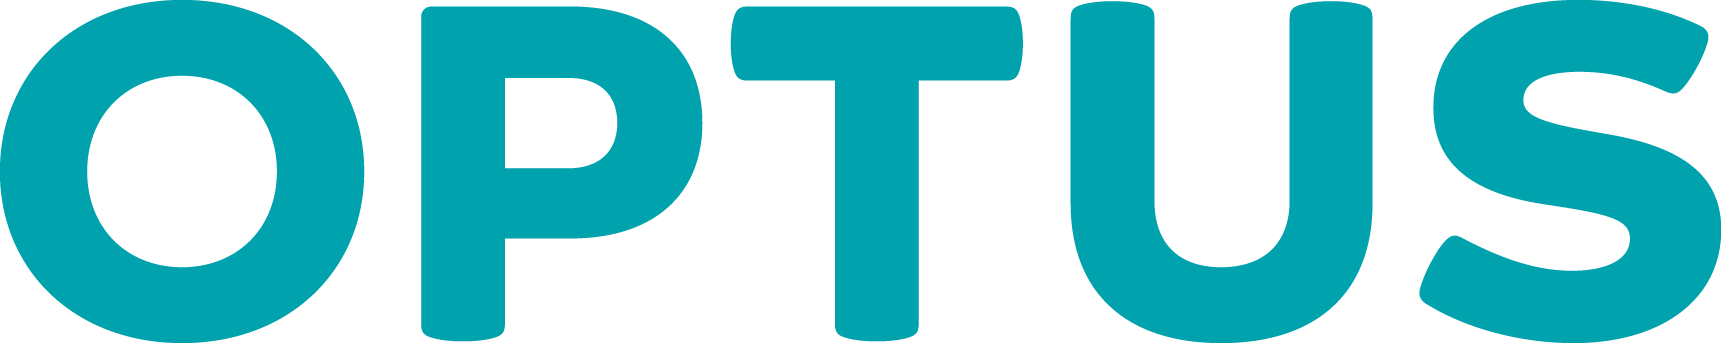 Teal Logo - Logos